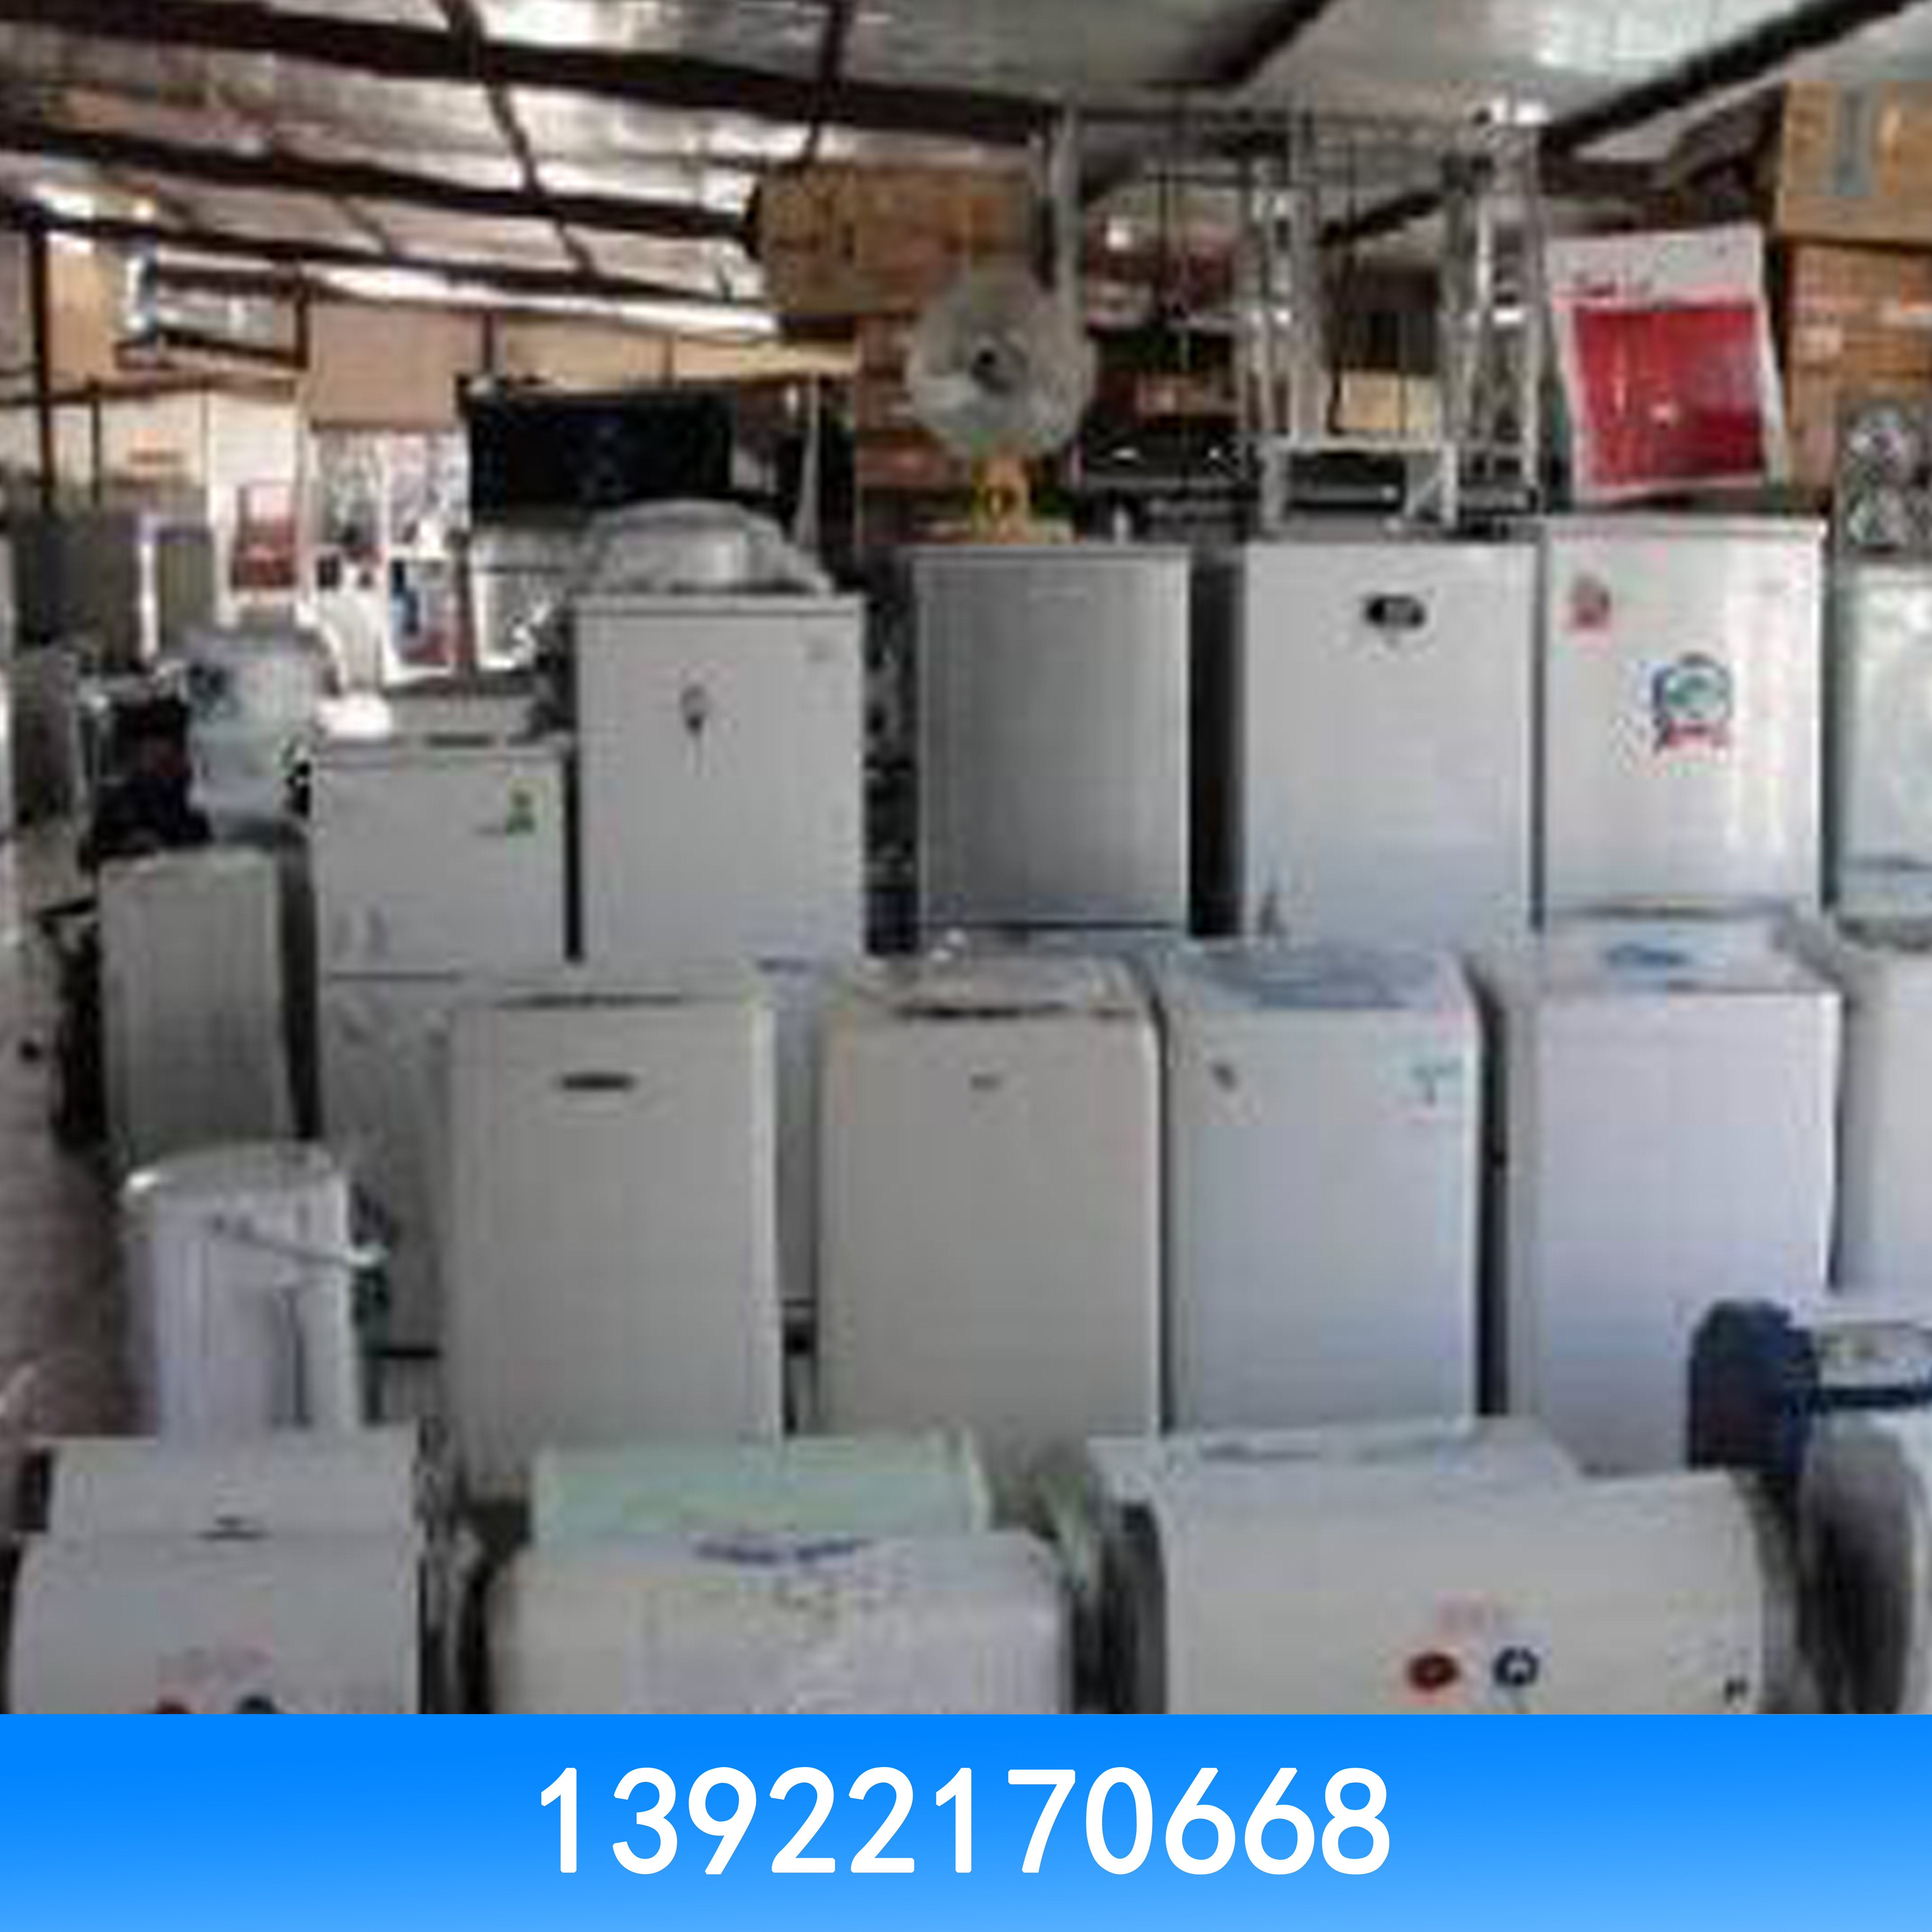 二手空调回收 空调高价回收 空调高价回收公司 广州空调高价回收 二手空调高价回收